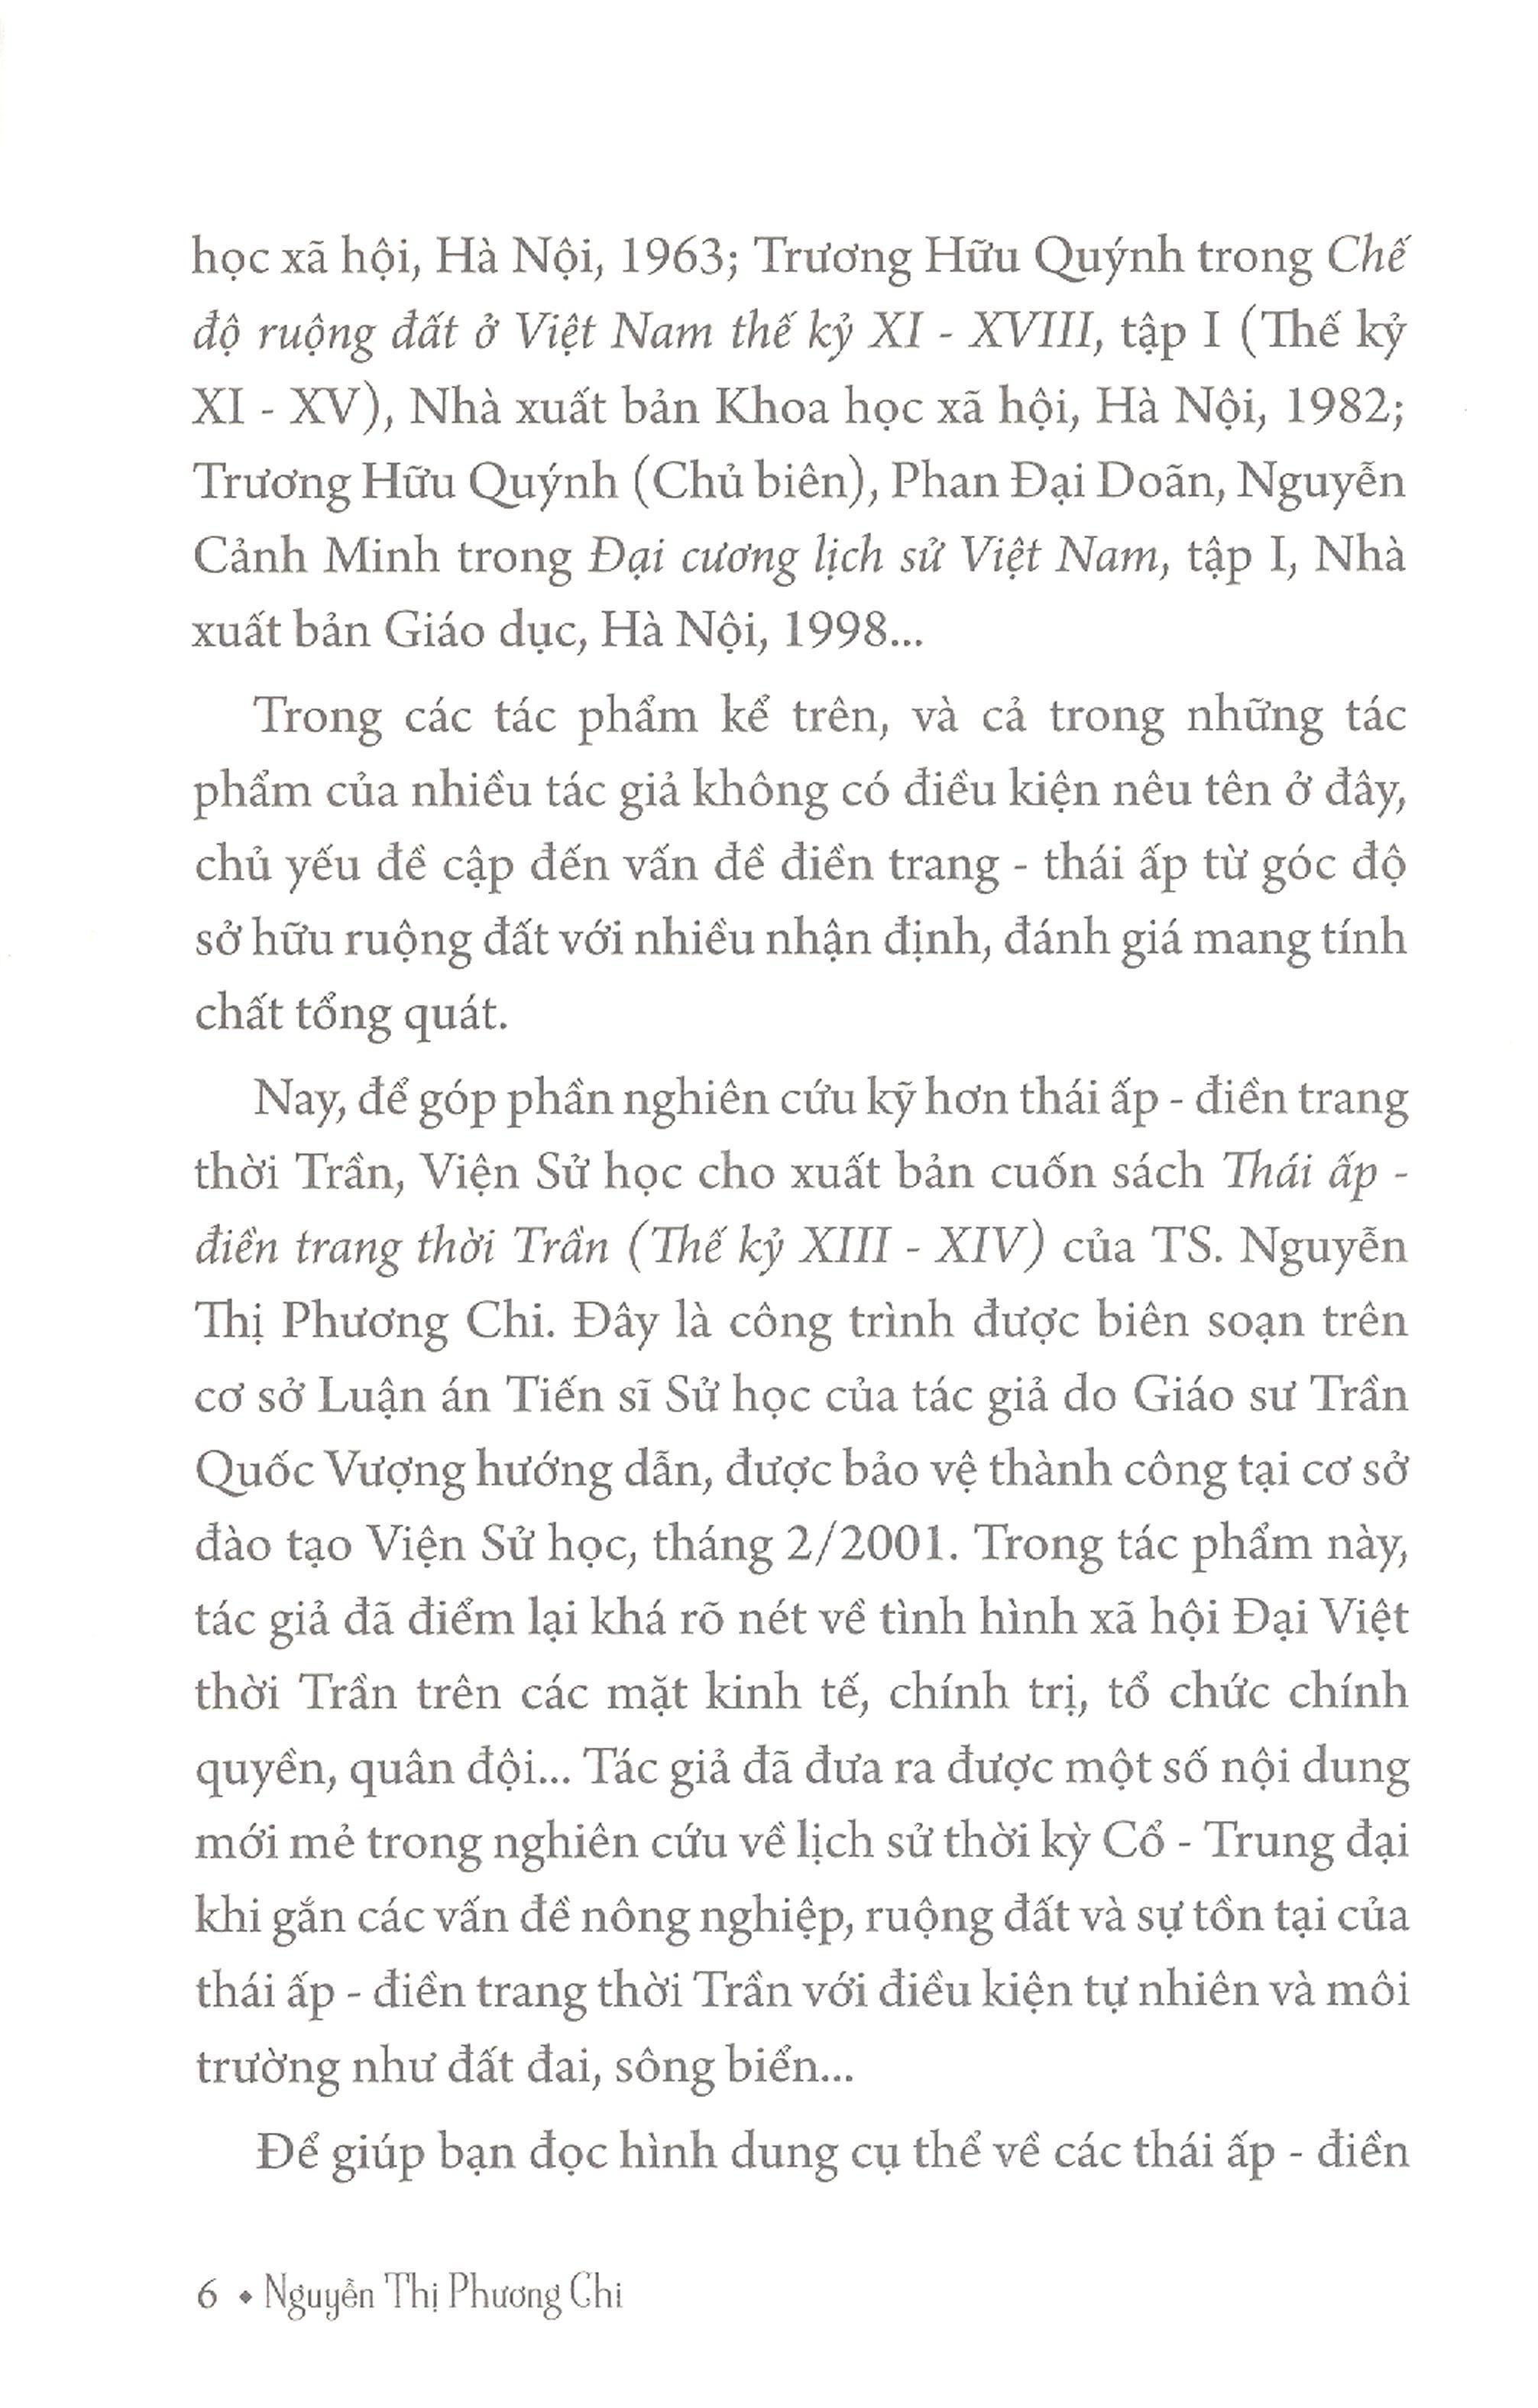 Thái Ấp, Điền Trang Thời Trần (Thế Kỷ XIII-XIV)